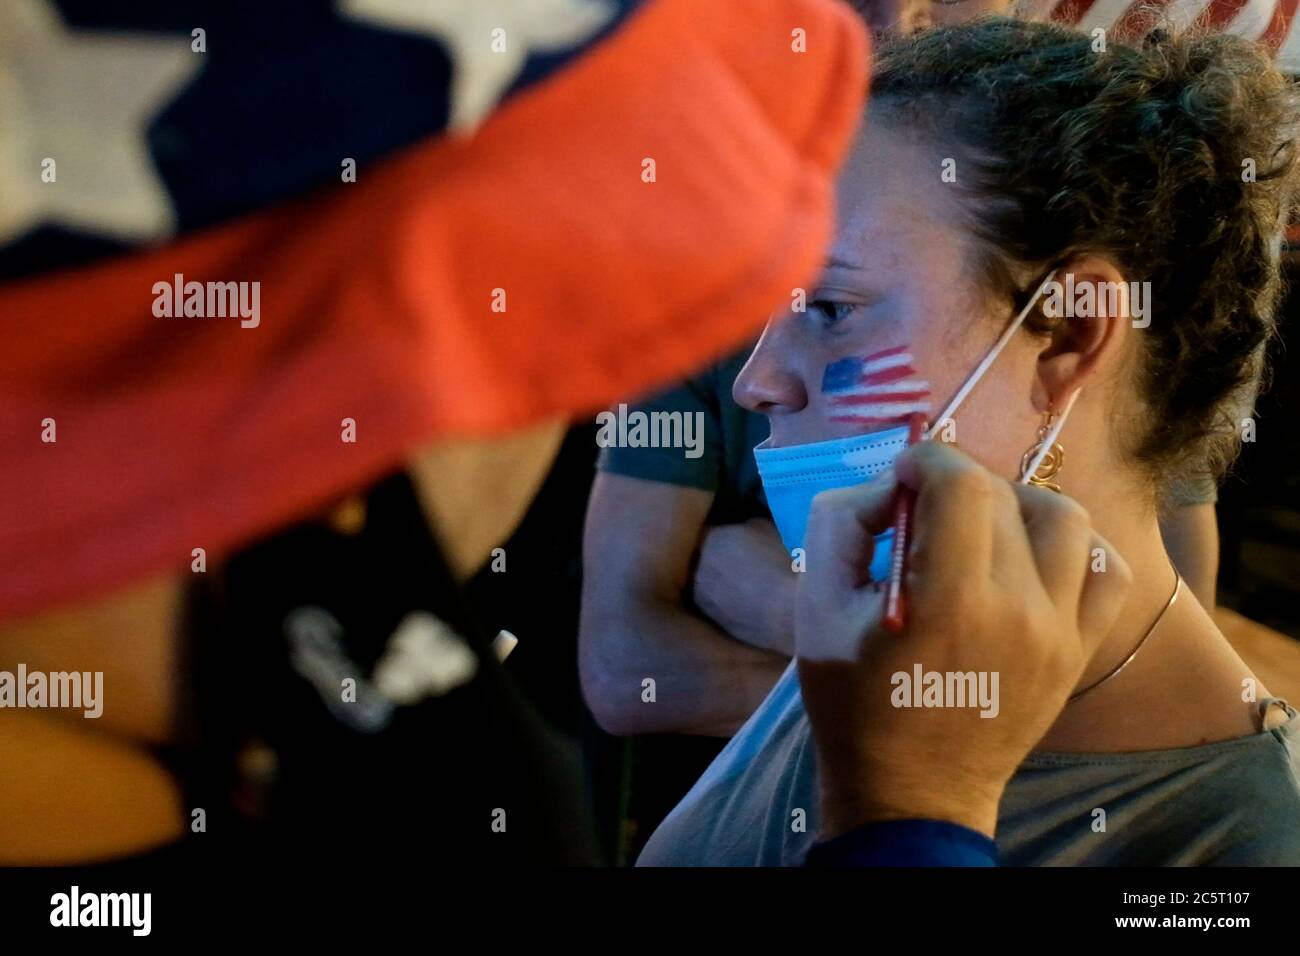 Un homme israélien vêtu de la tenue de l'oncle Sam peint le drapeau américain sur le visage d'une femme lors de la célébration du jour de l'indépendance des États-Unis le 4 juillet à Jérusalem Israël. Banque D'Images